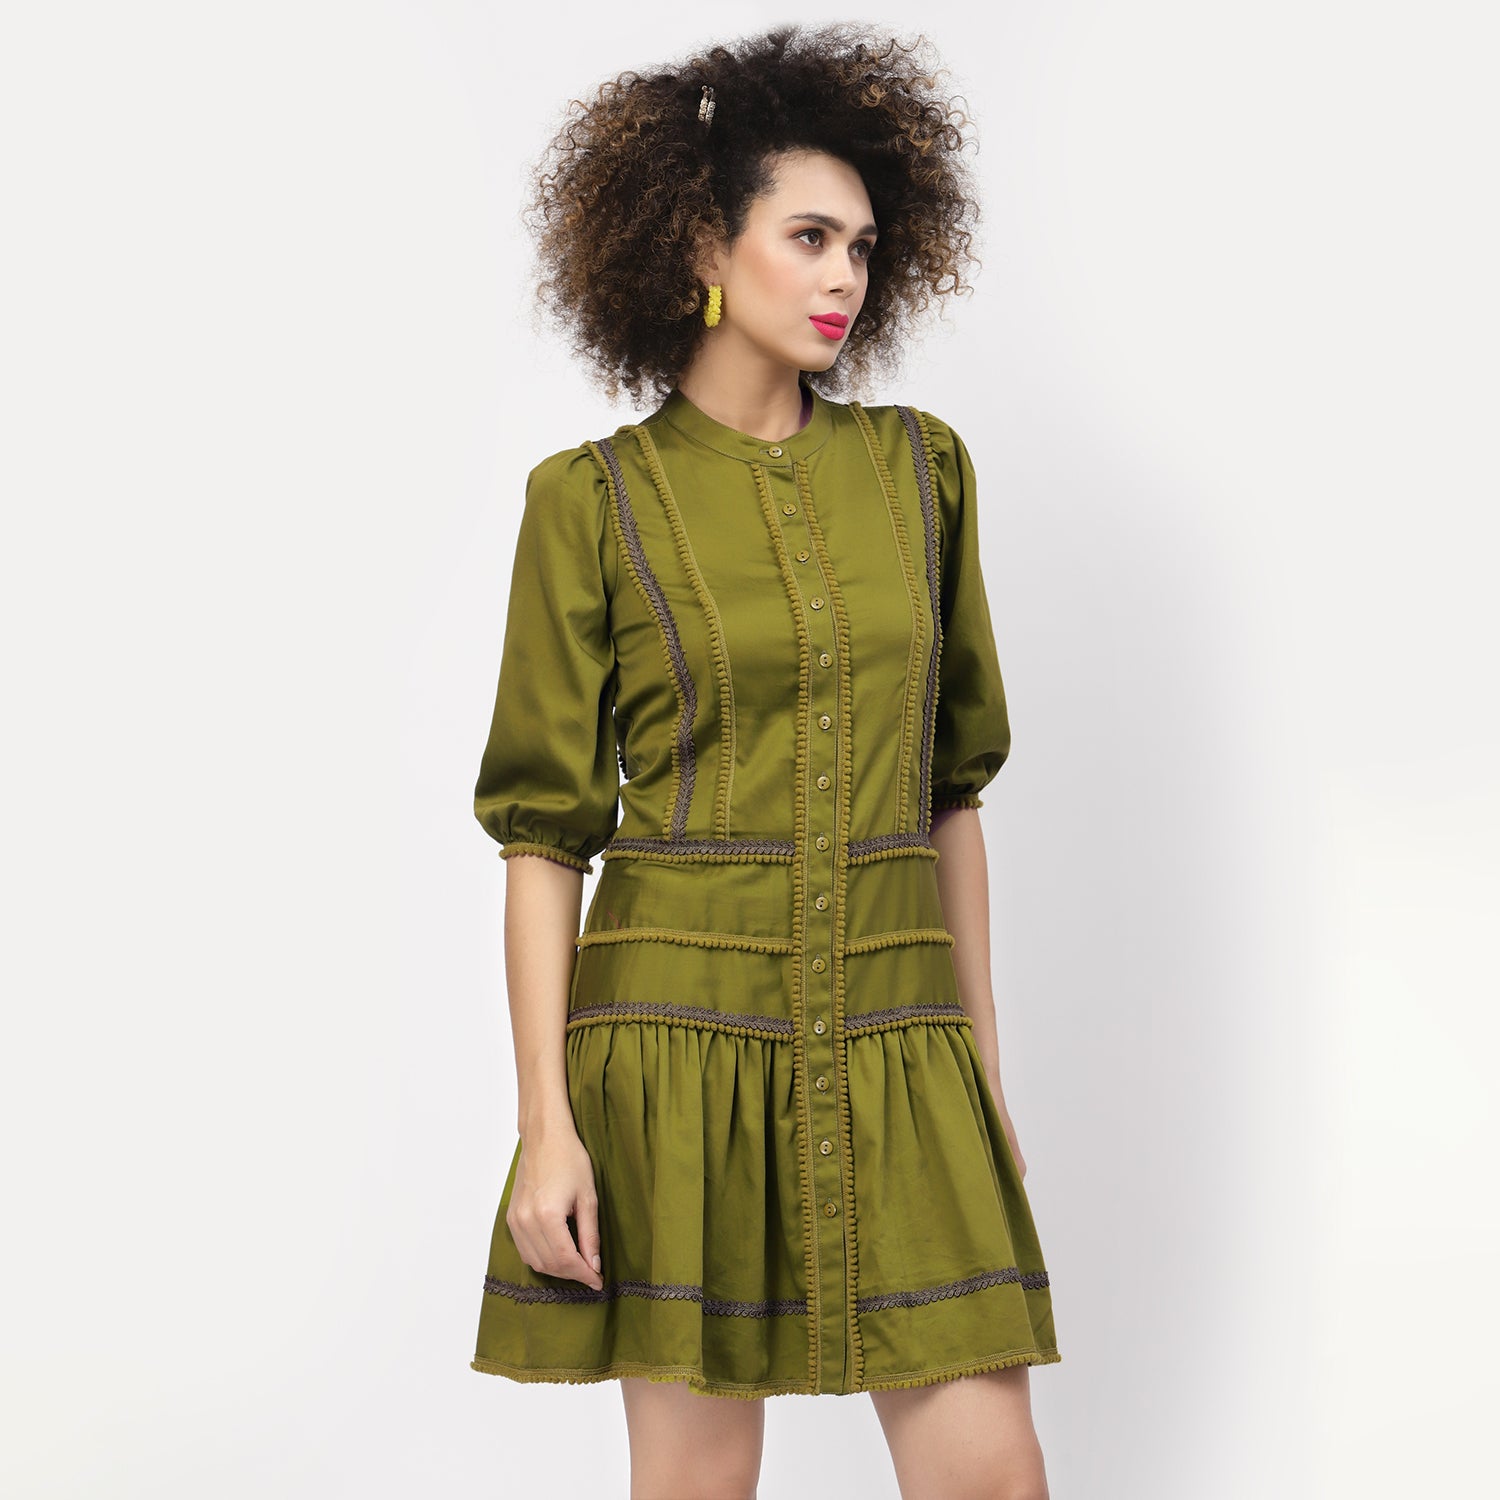 Olive Dress With Pom Pom Lace